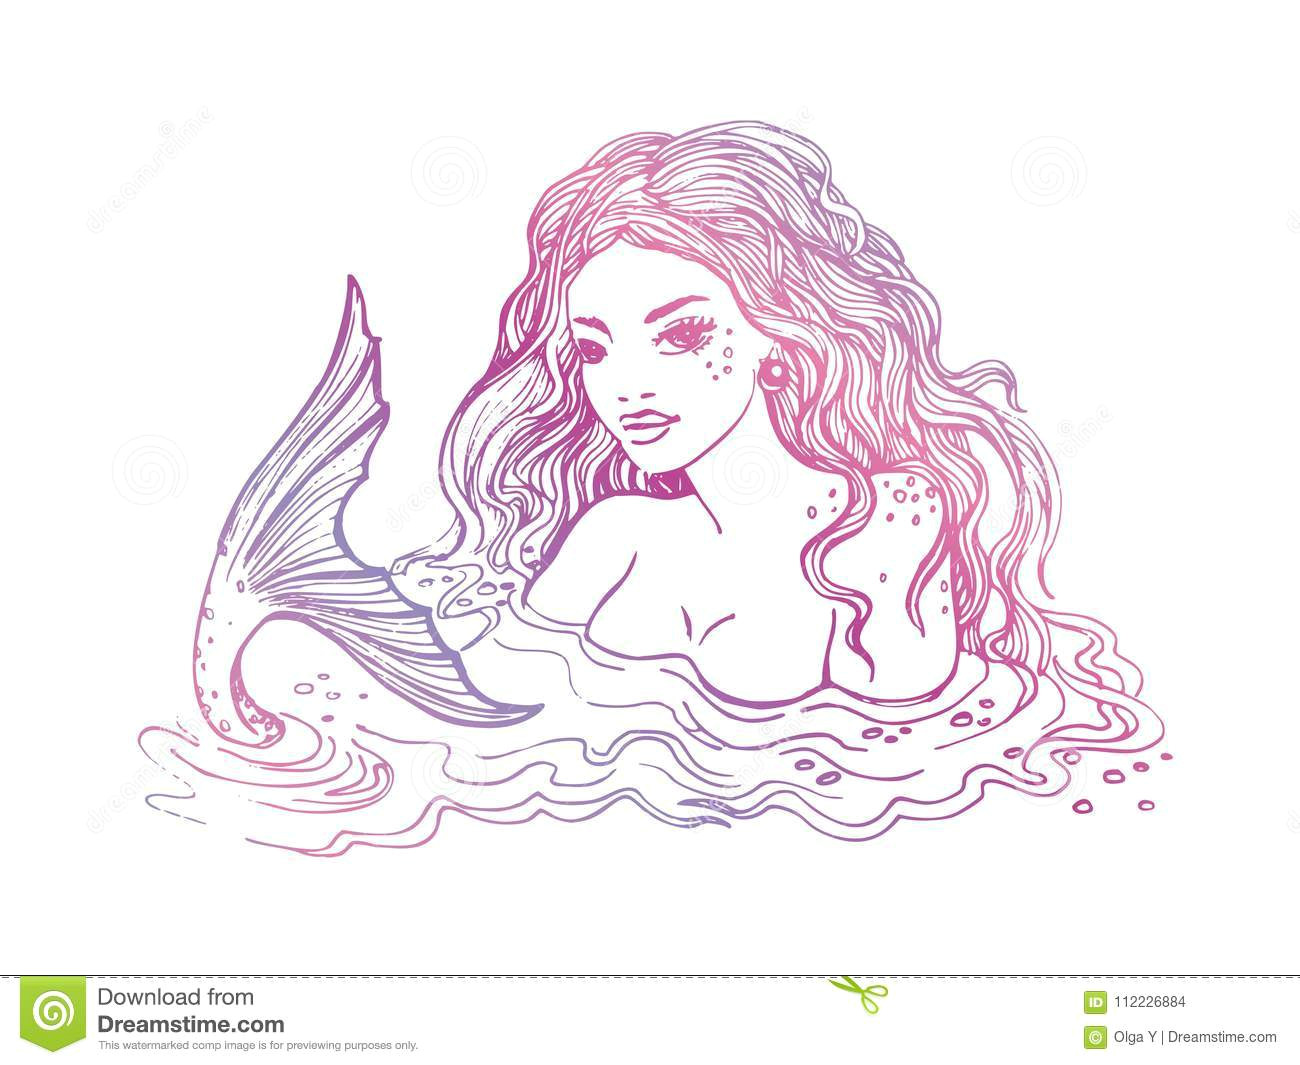 Drawing A Cartoon Mermaid A Bergeben Sie Gezogene Meerjungfrau Auf Weia Er Hintergrund Weia Er